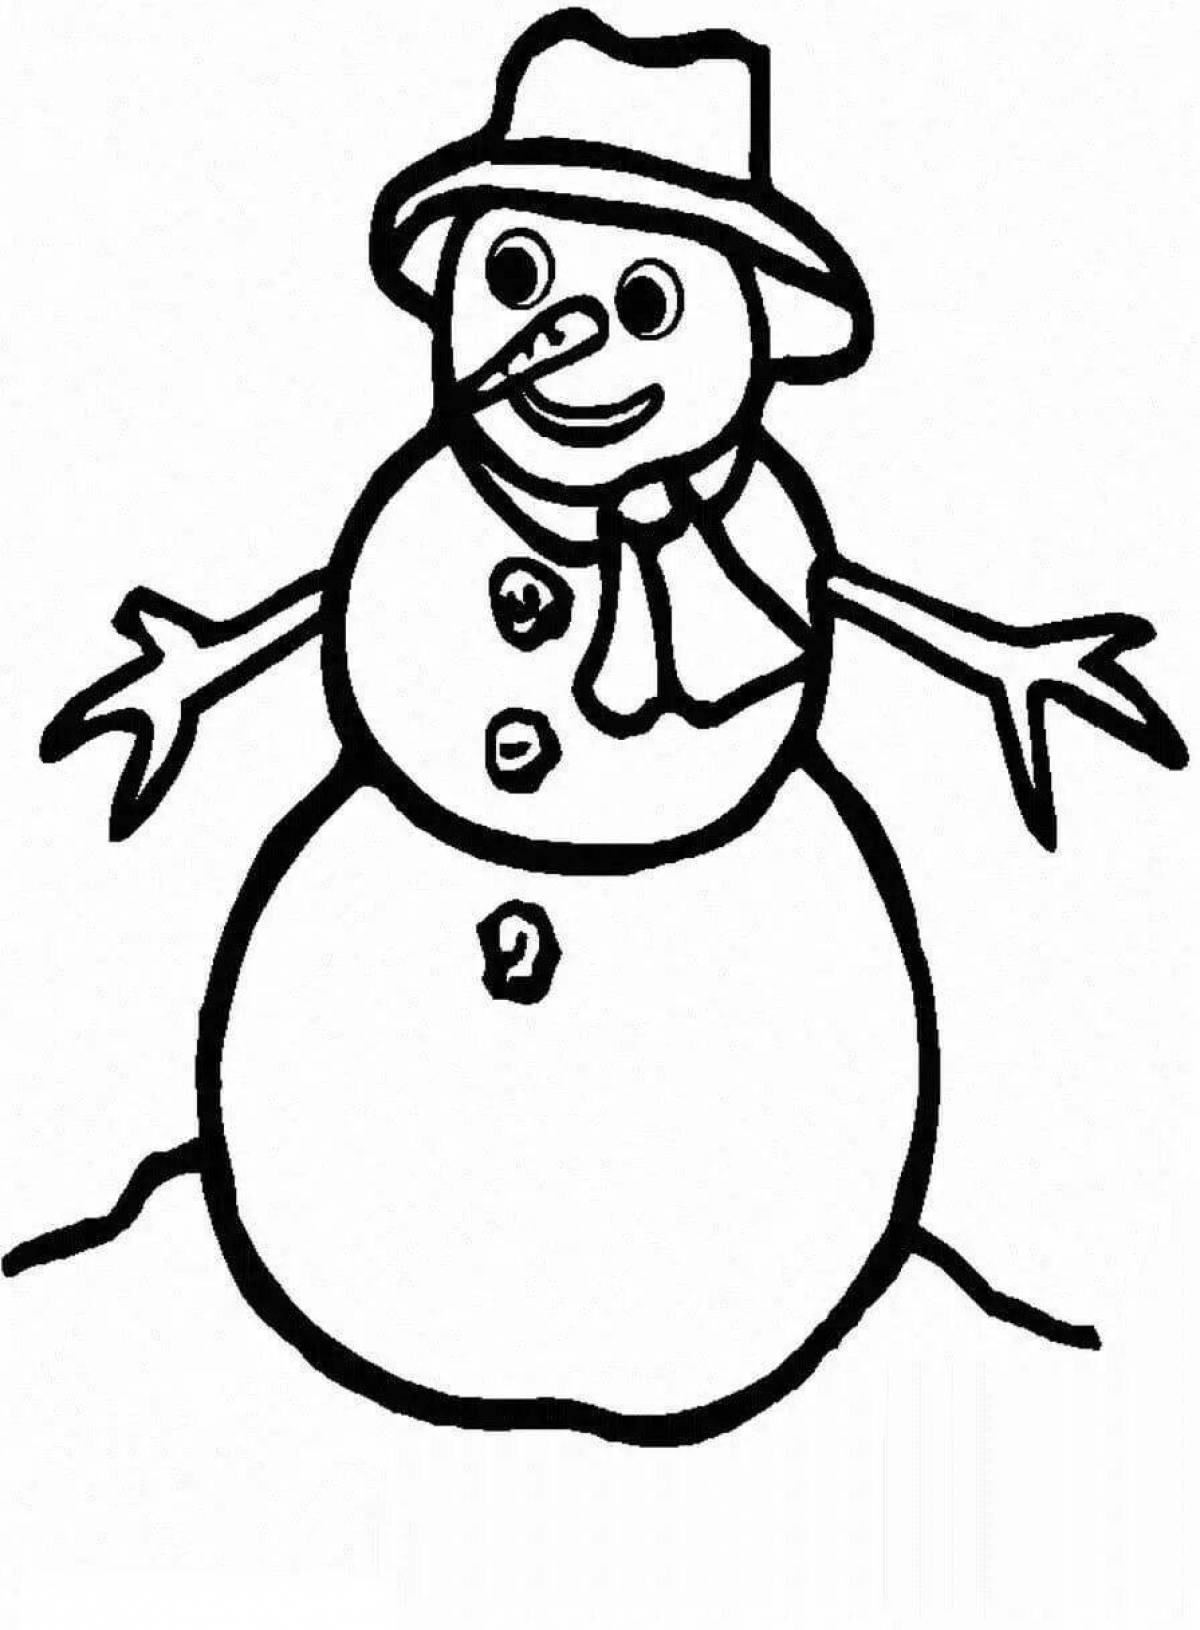 Великолепная раскраска снеговик для детей 5 лет